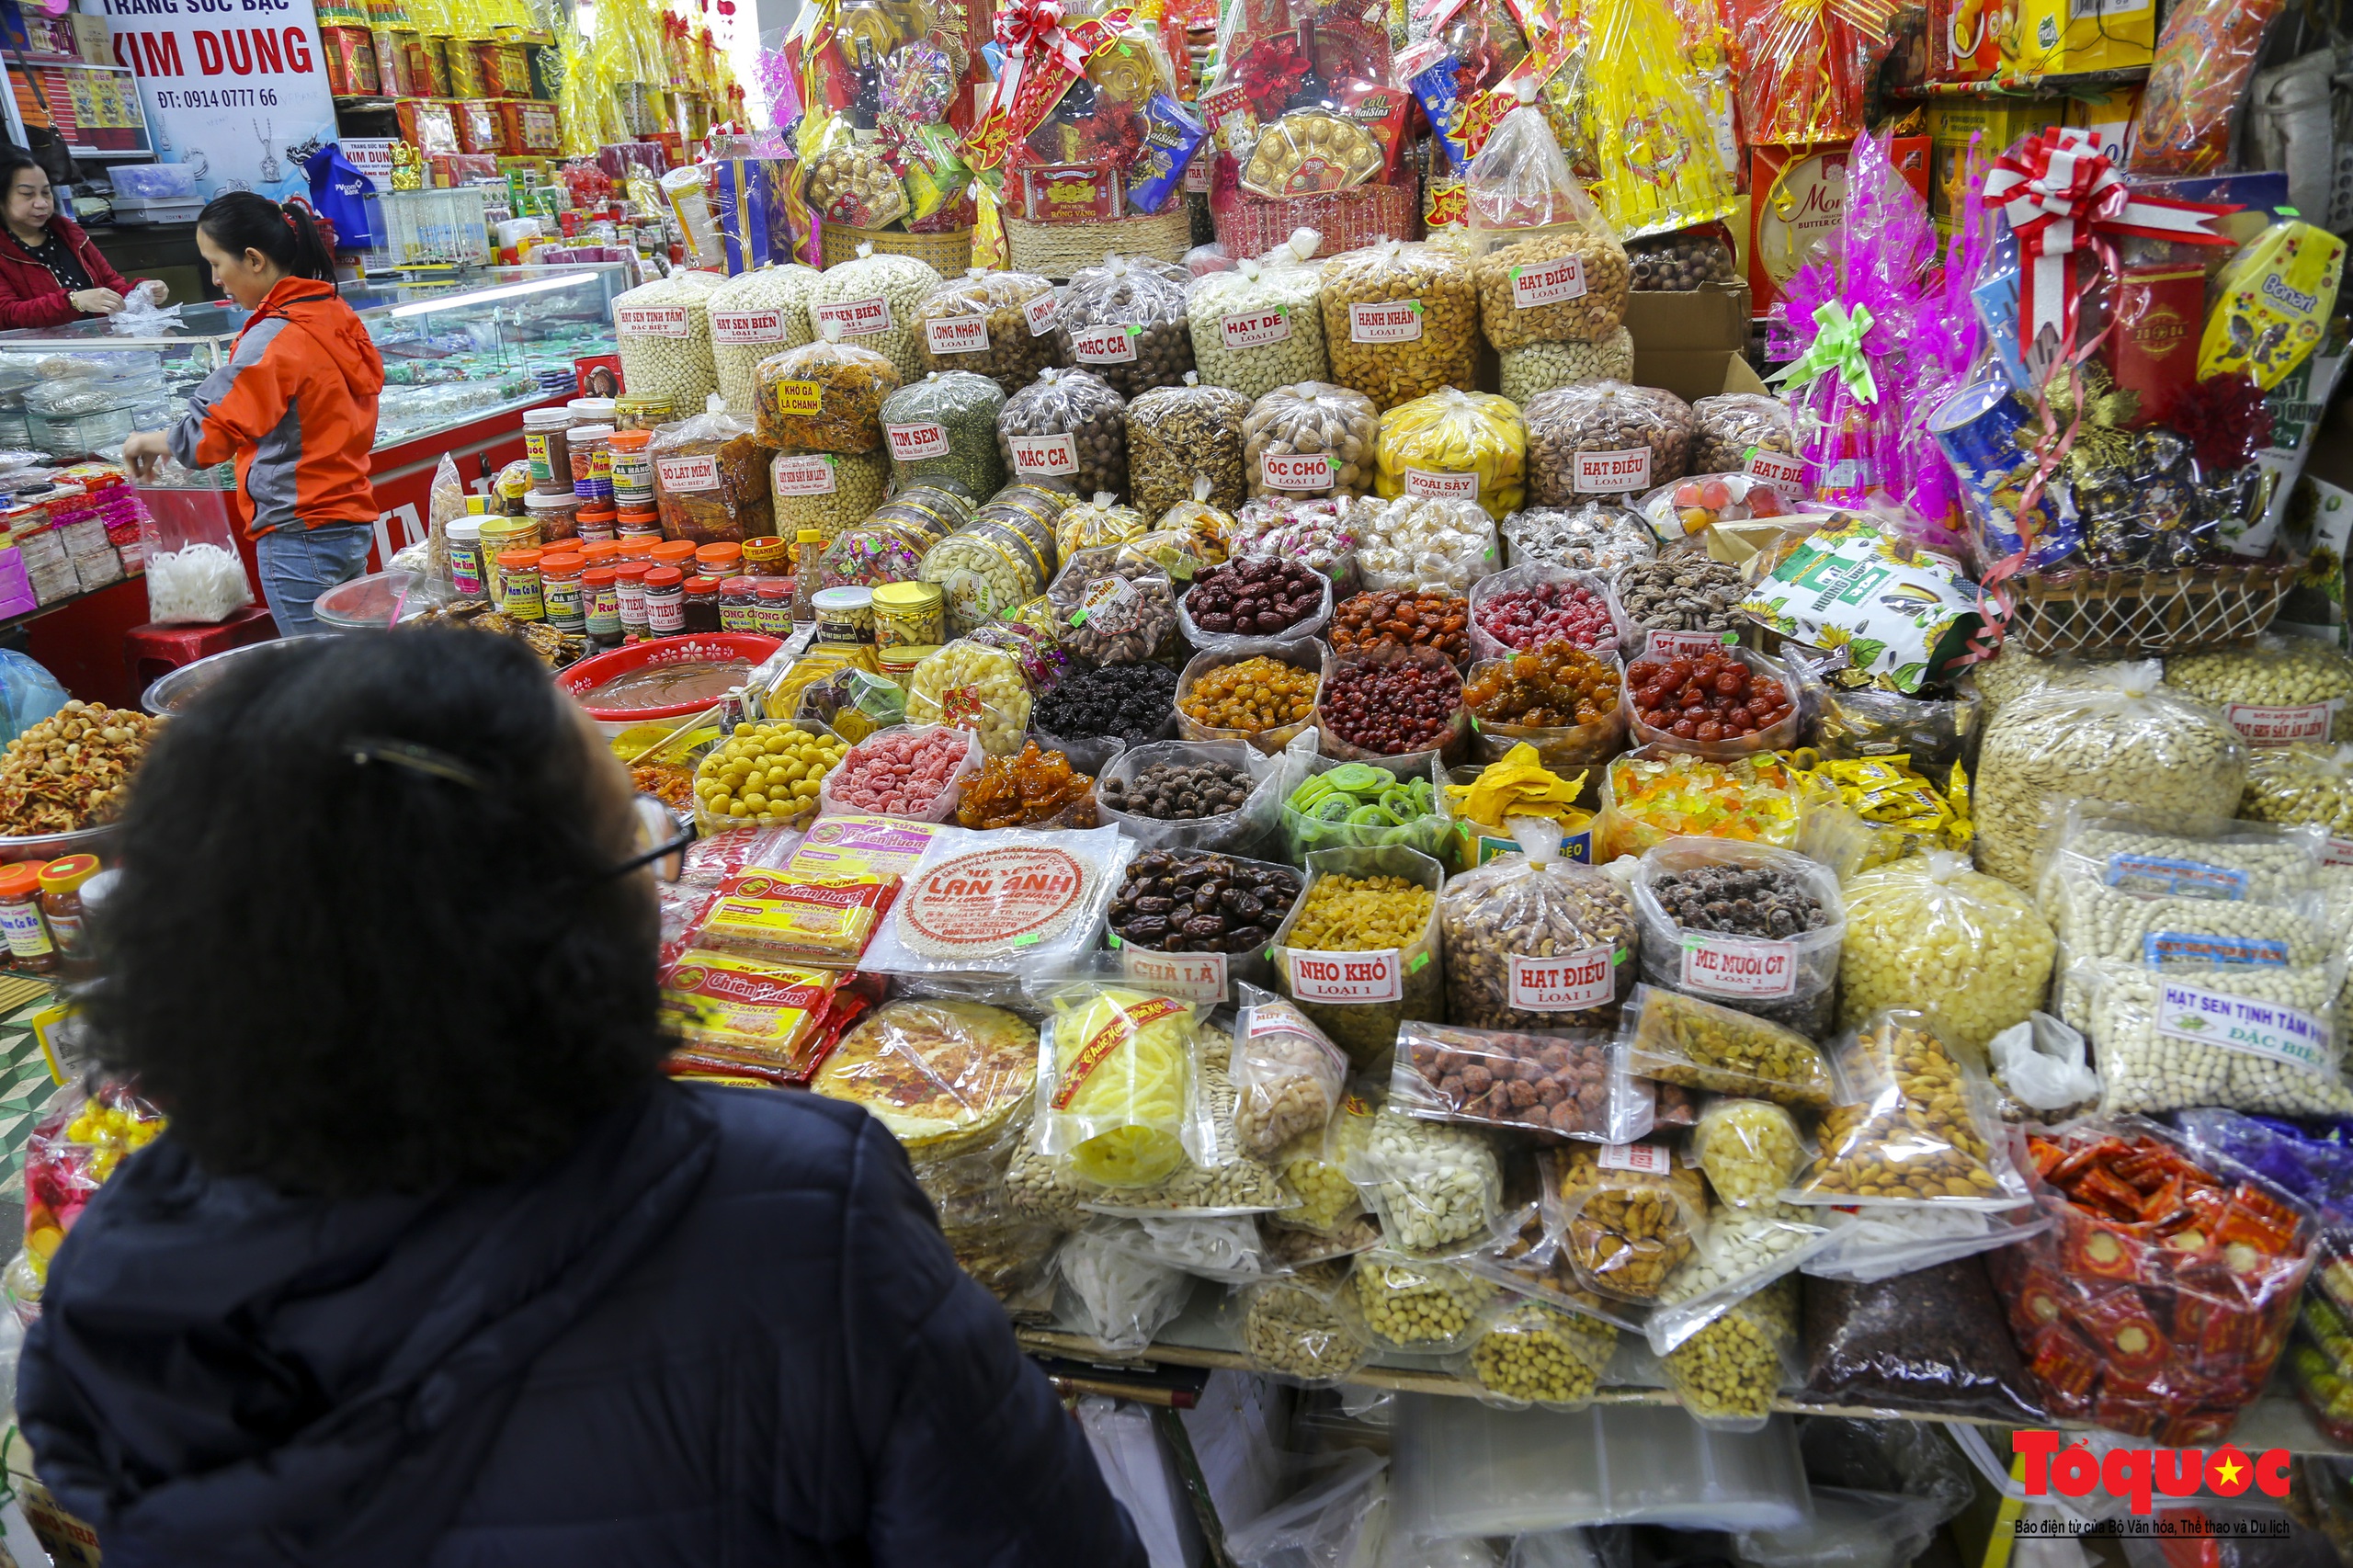 Hàng hóa Tết đa dạng, sức mua tại ngôi chợ nổi tiếng bậc nhất xứ Huế vẫn chưa cao - Ảnh 15.